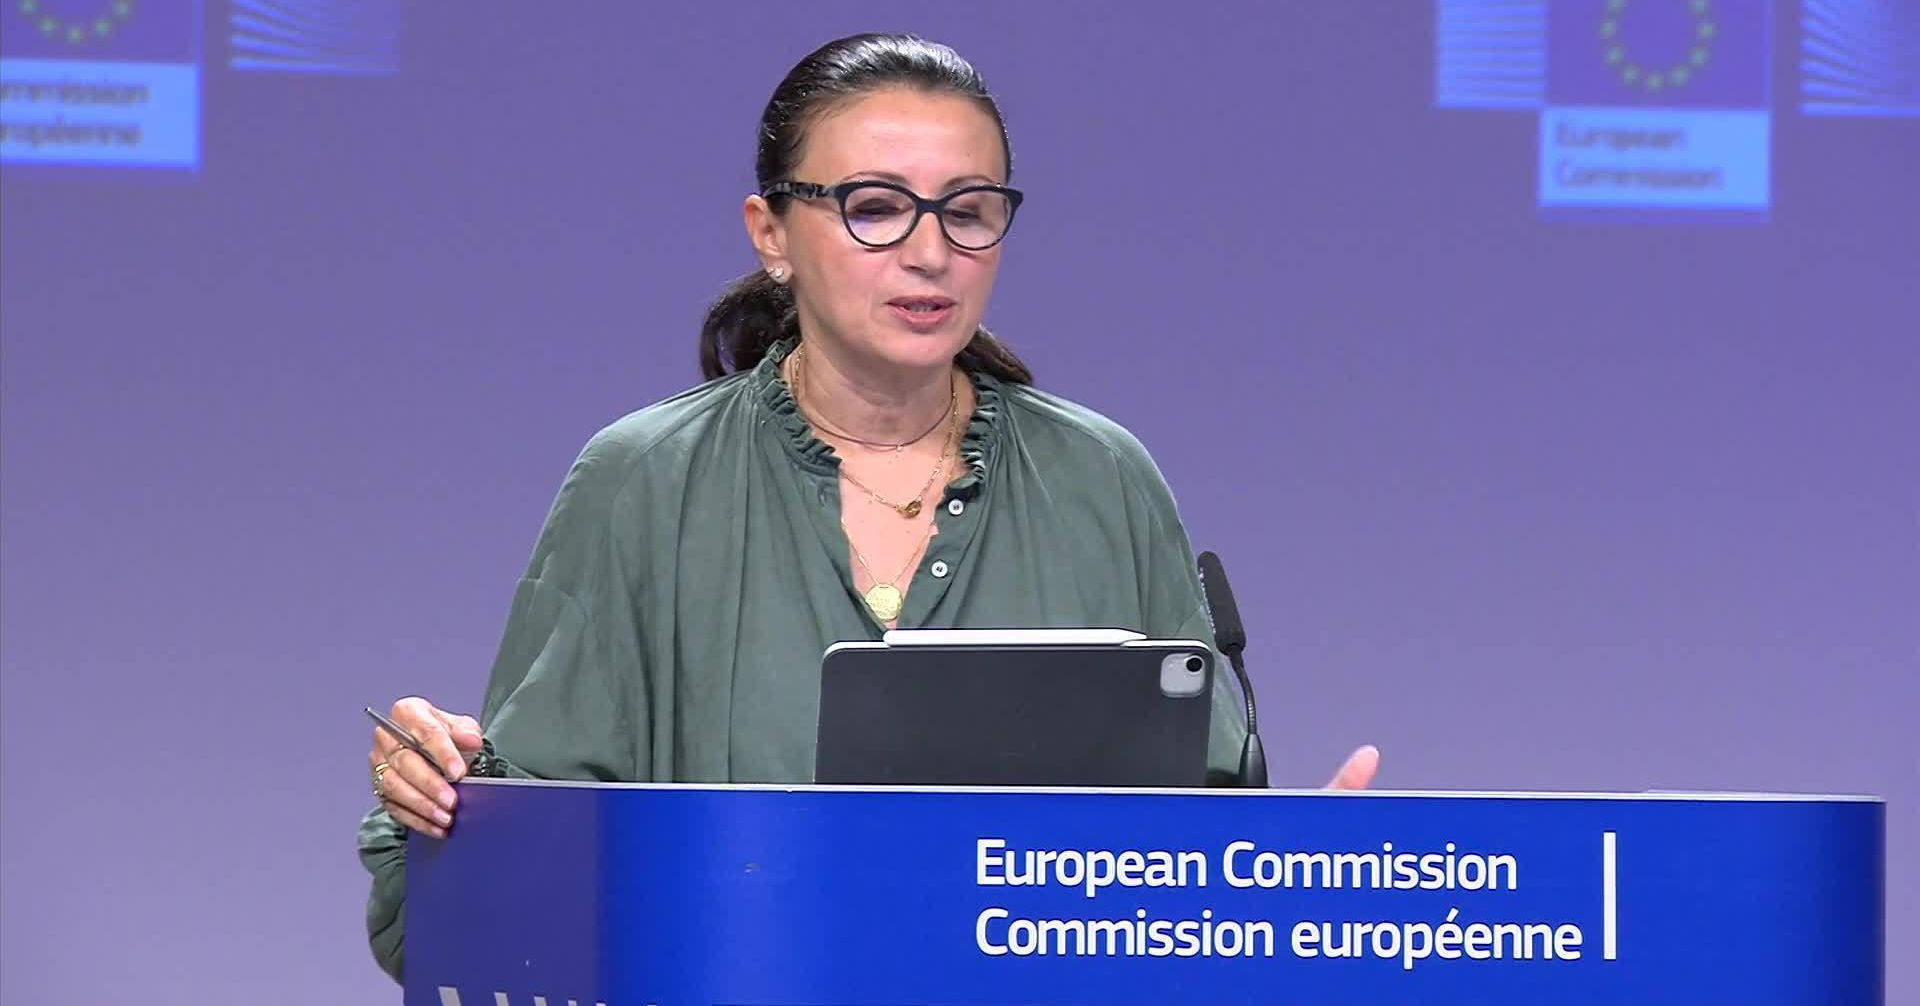 Пресс-секретарь внешнеполитической службы ЕС Набила Массрали.